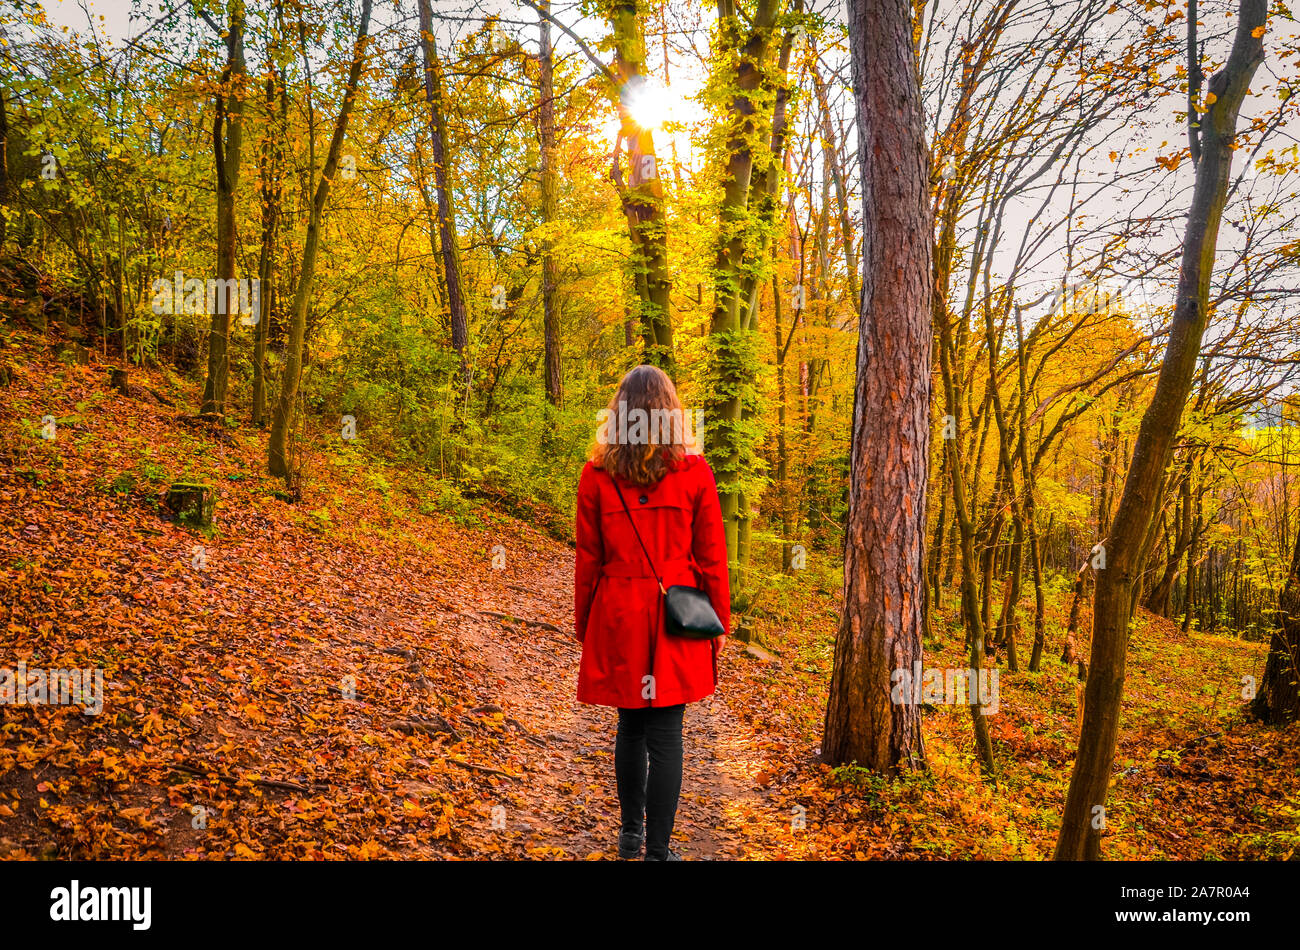 Schöne kaukasische Frau im roten Mantel im bunten Herbst Wald posieren. Sonne scheint durch die Bäume. Herbstmode, Farben und Stil. Herbst Mode Trends. Rotkäppchen Konzept. Stockfoto